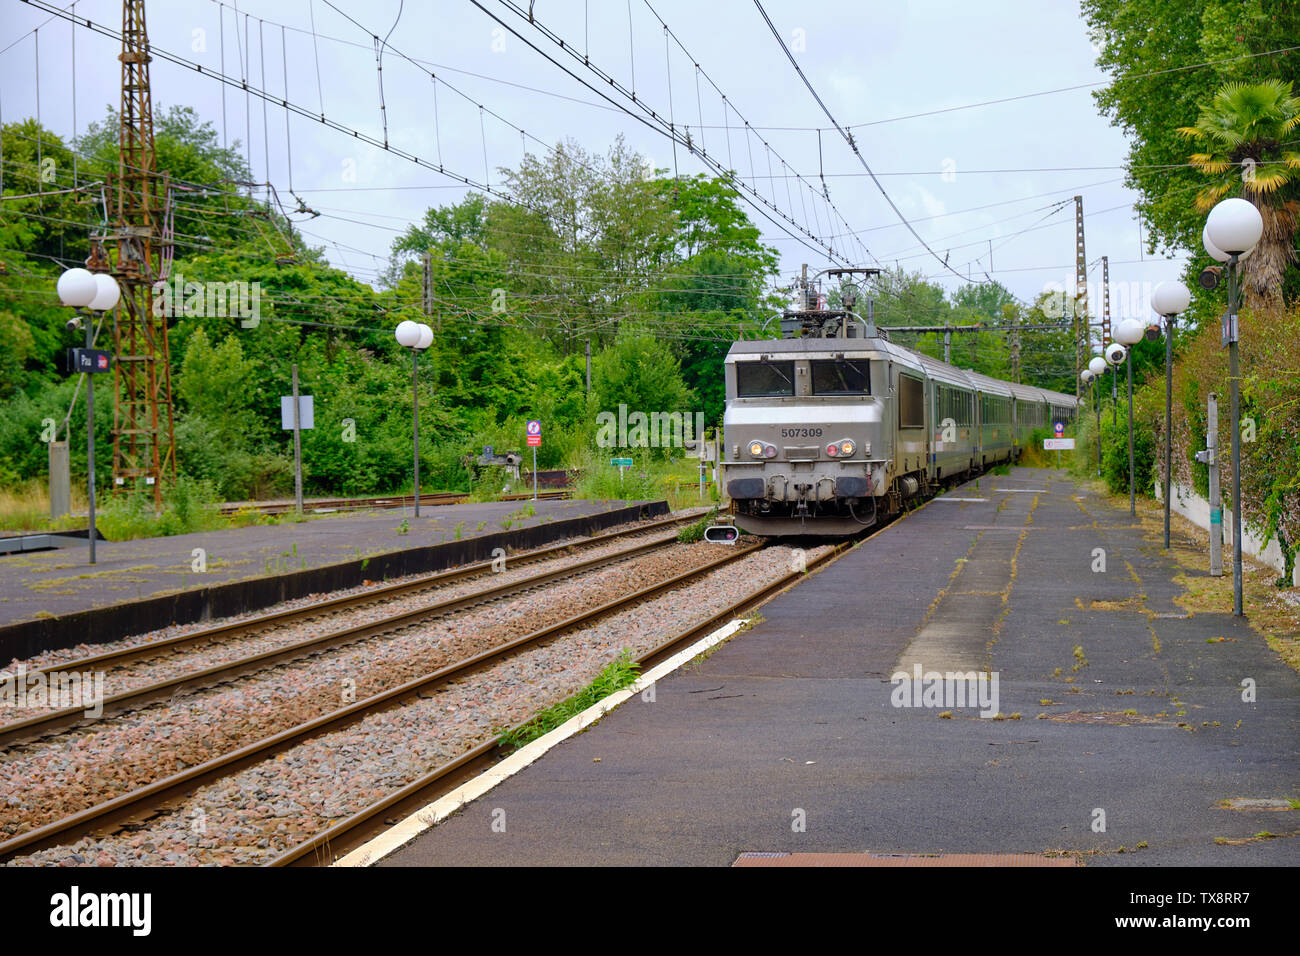 Französische Intercity in die Pau entfernt. Ansicht der Plattform neben Titel und elektrische Leitungen. Pau, Frankreich, 8. Juni 2019 Stockfoto